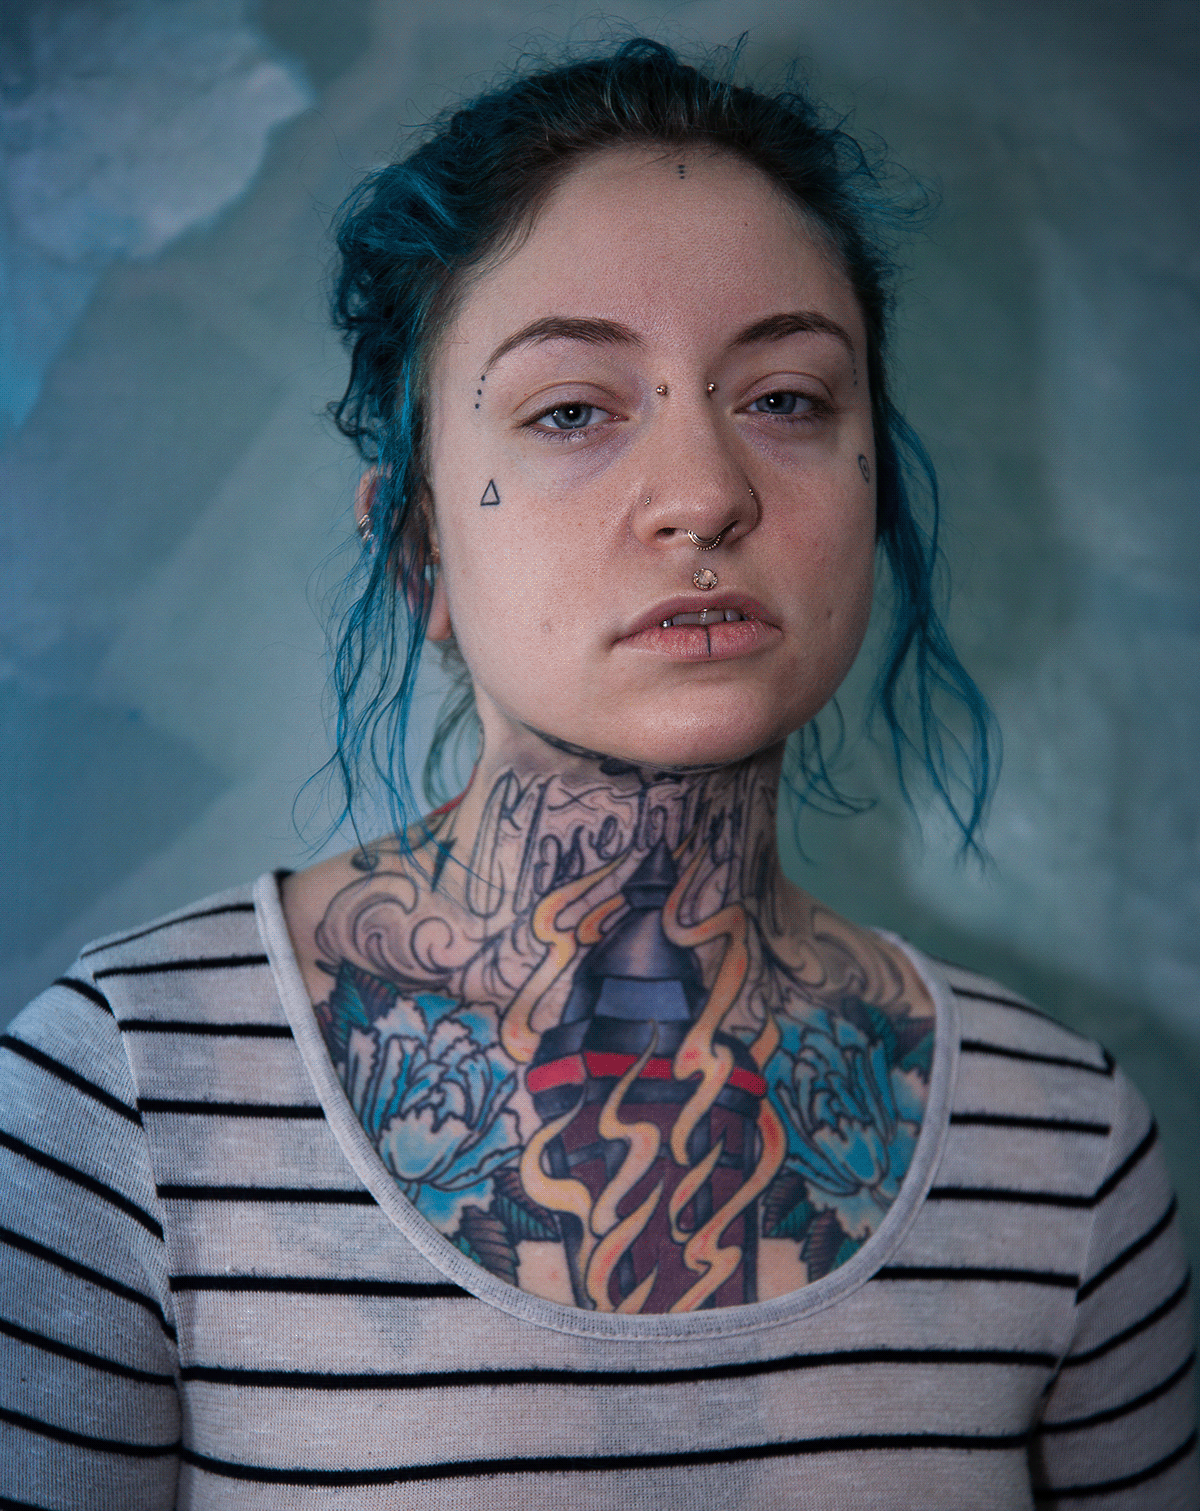 body mods Photography  piercing portrait Portraiture